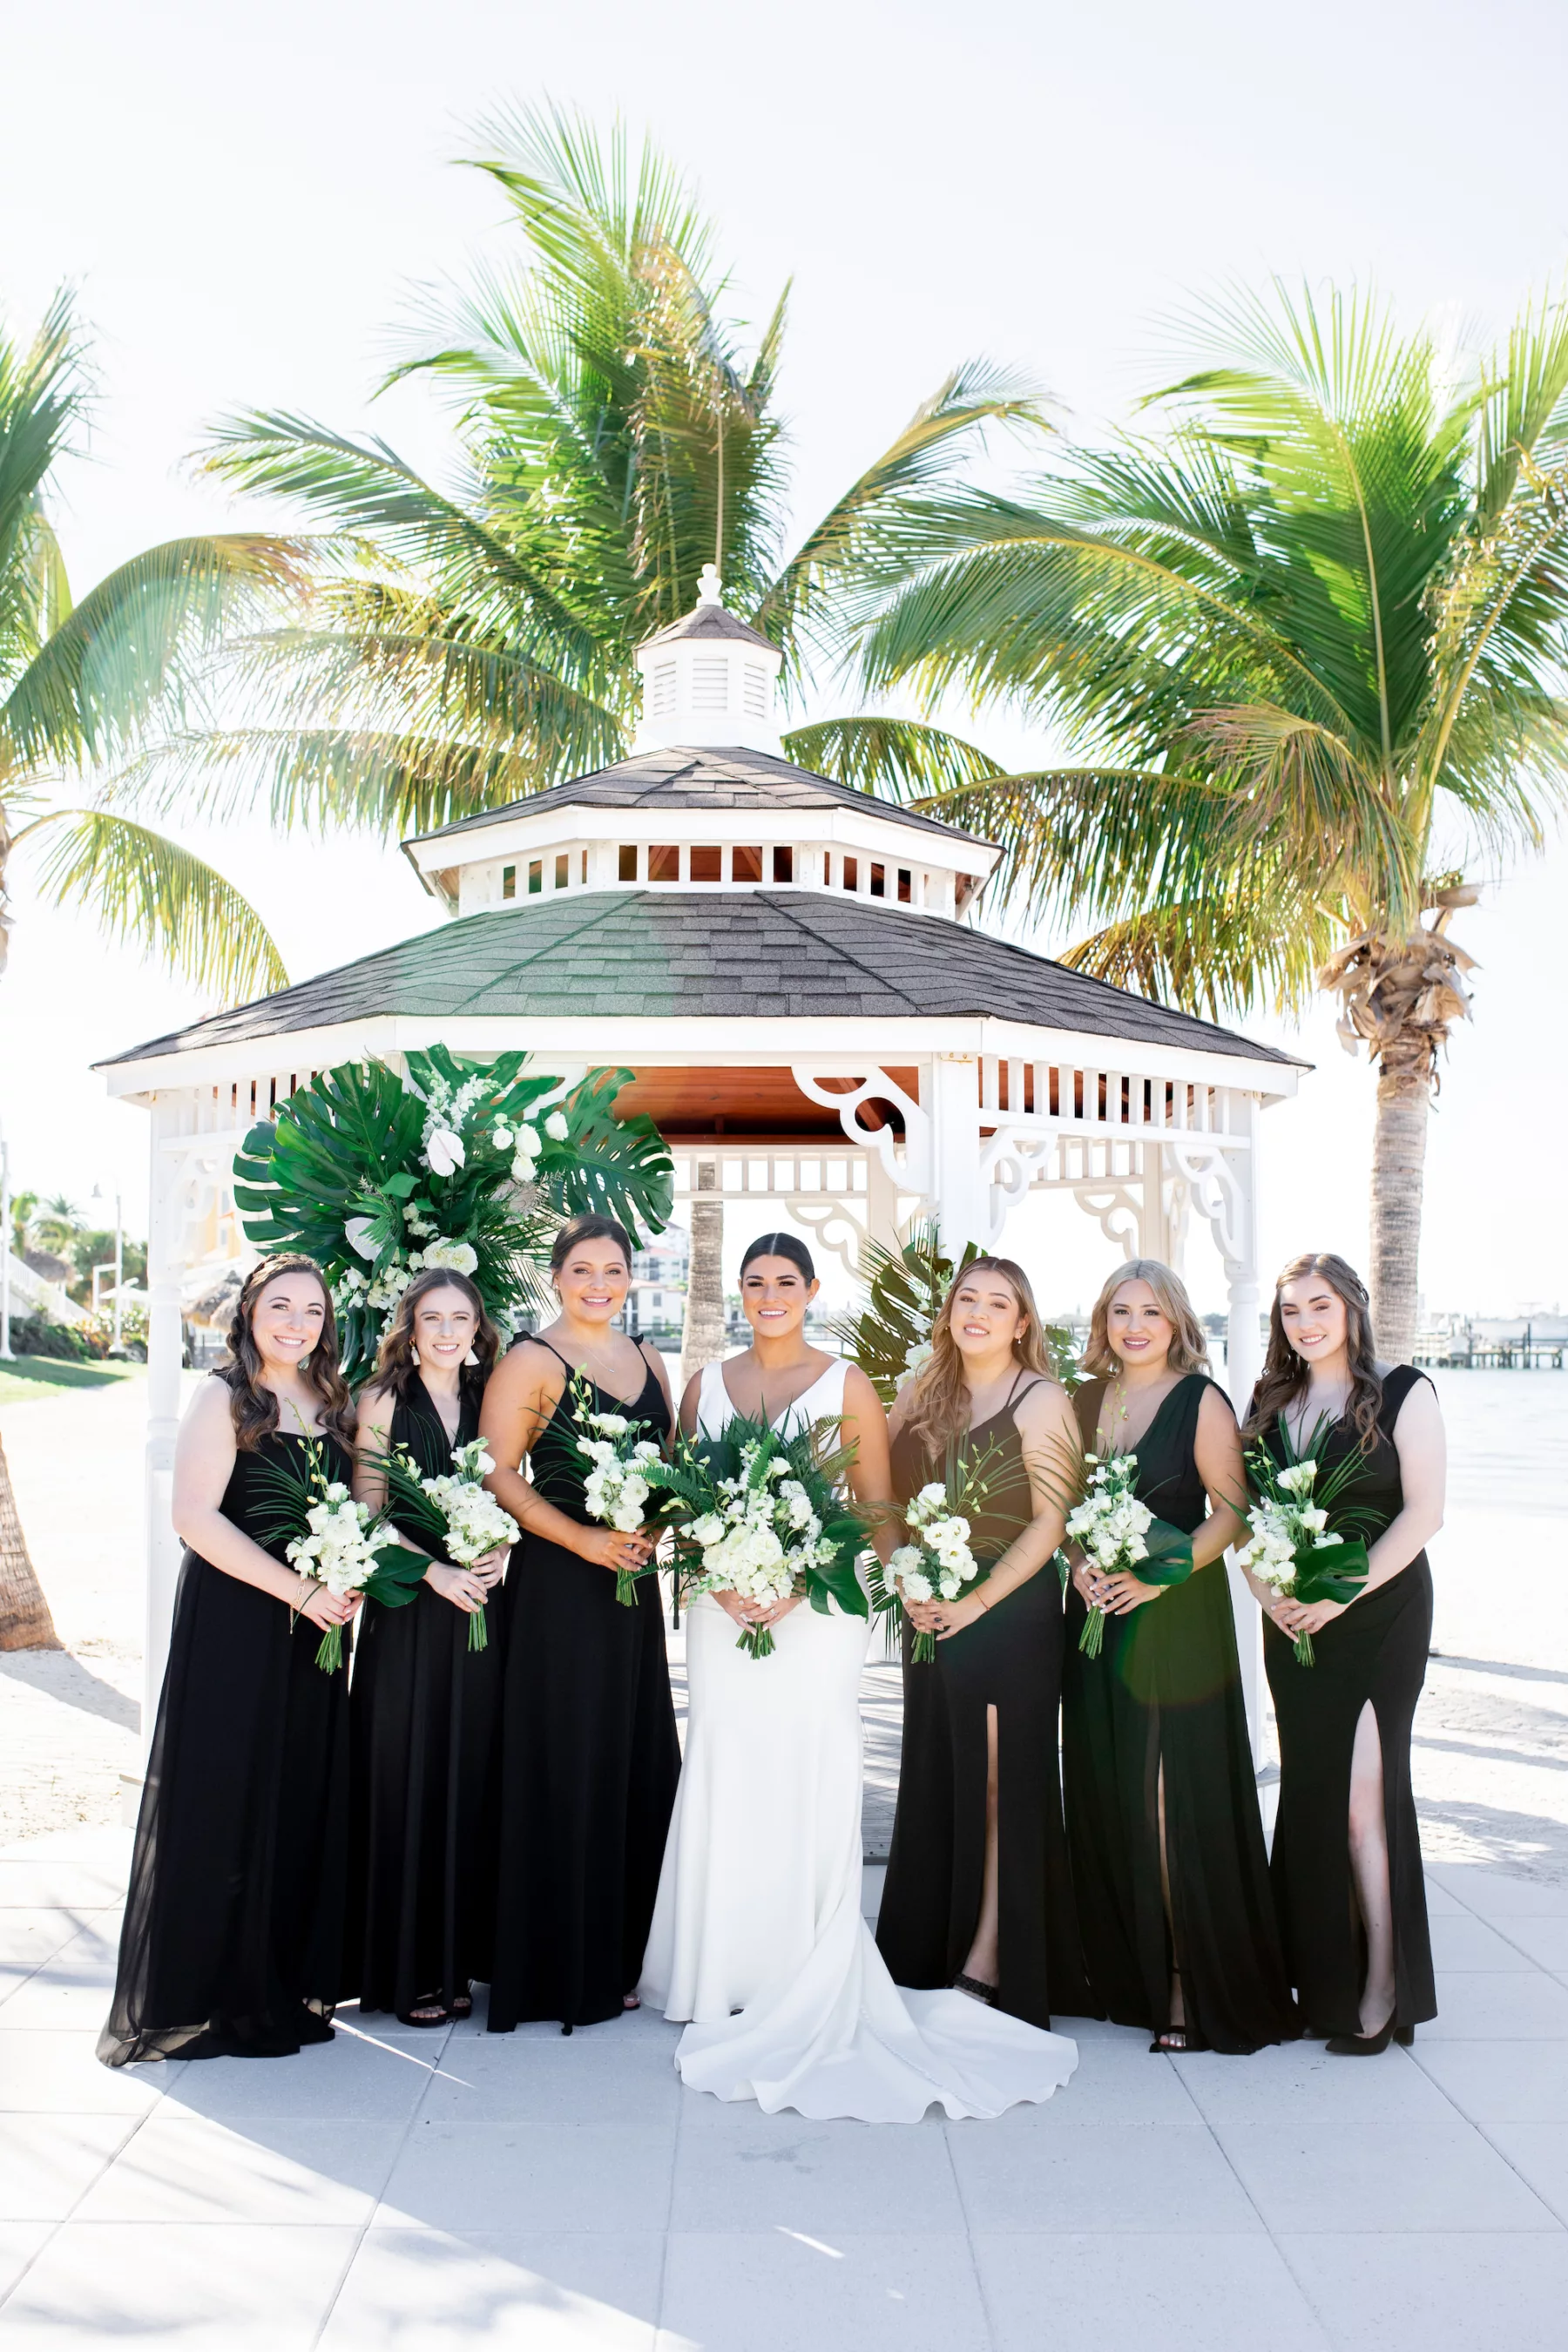 Mismatched Black Floor Length Bridemaids Wedding Dress Ideas for Modern Beach Wedding